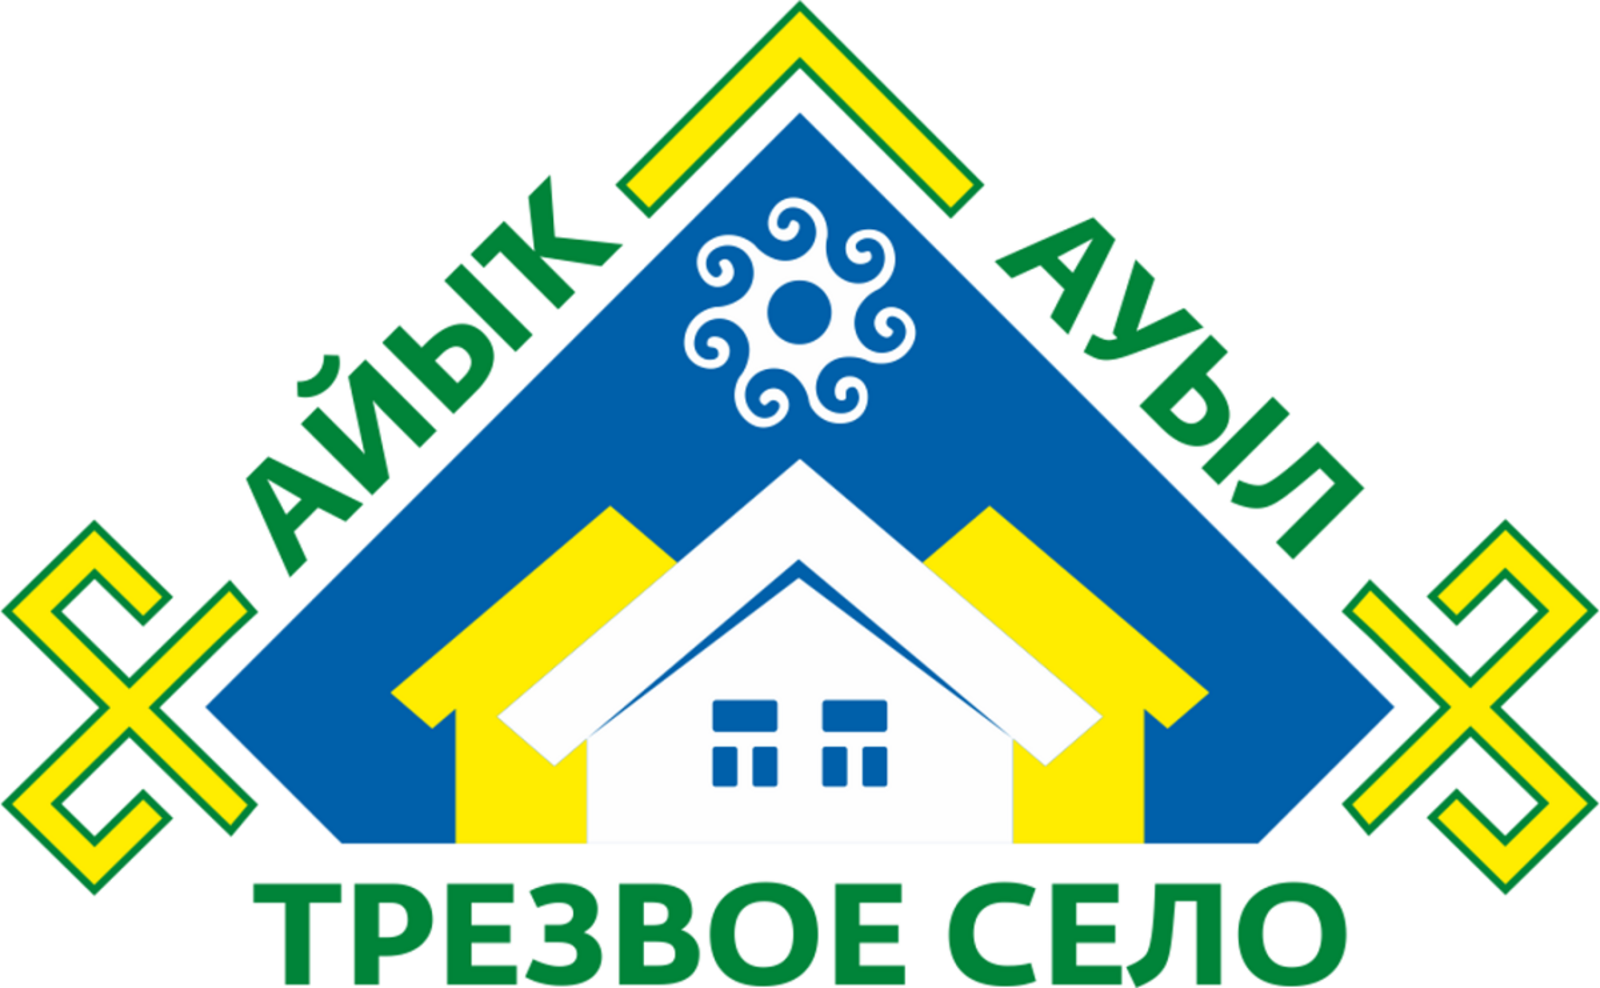 1537 деревень и сел Башкортостана стали участниками  Республиканского конкурса «Трезвое село 2021 года».